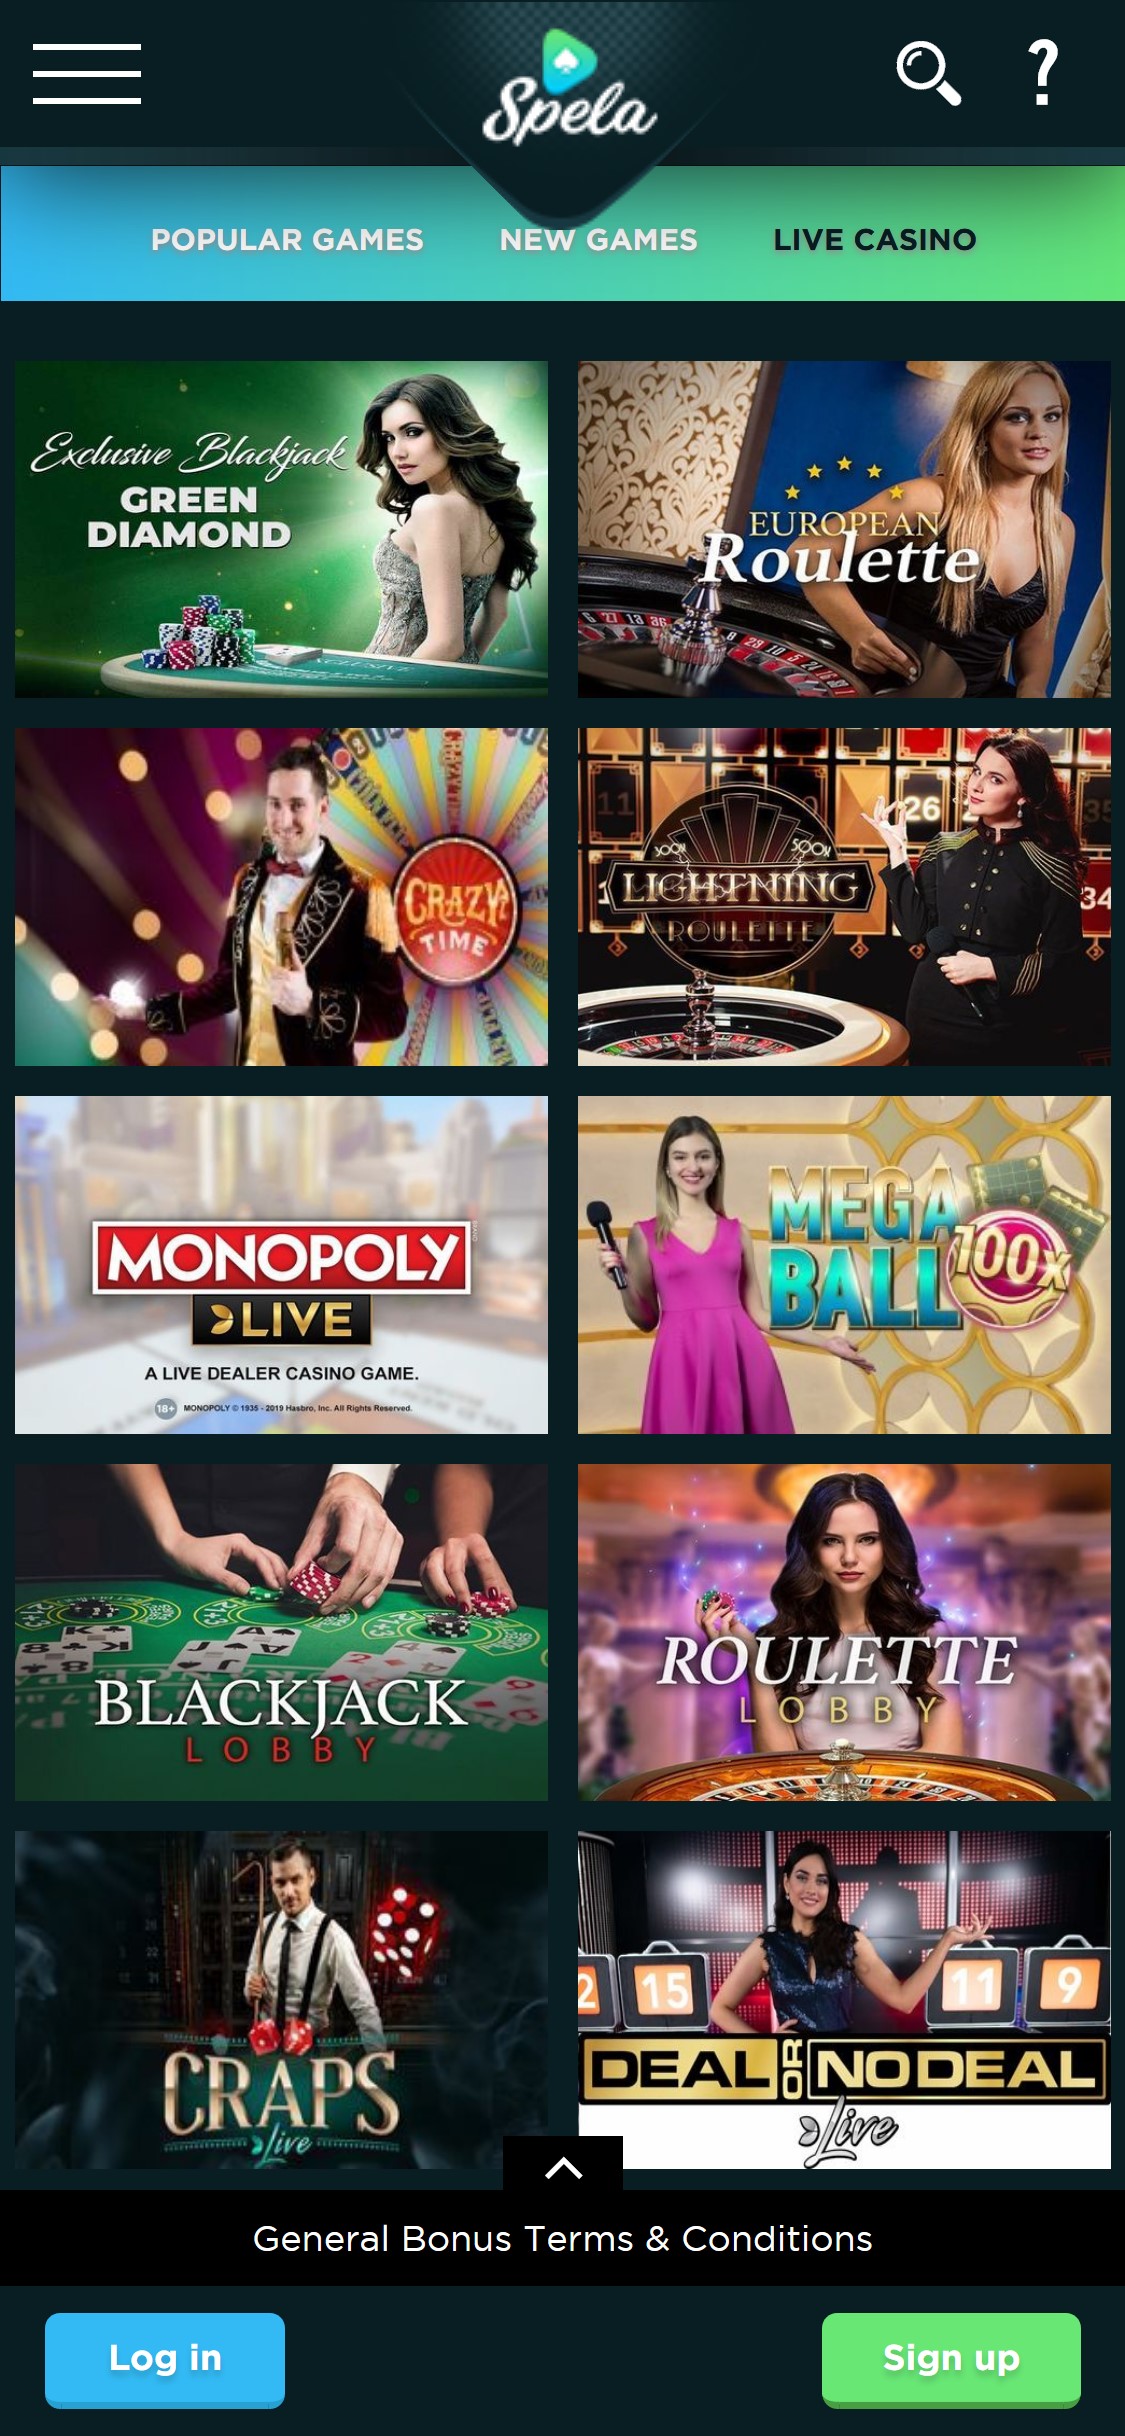 Spela Casino Mobile Live Dealer Games Review